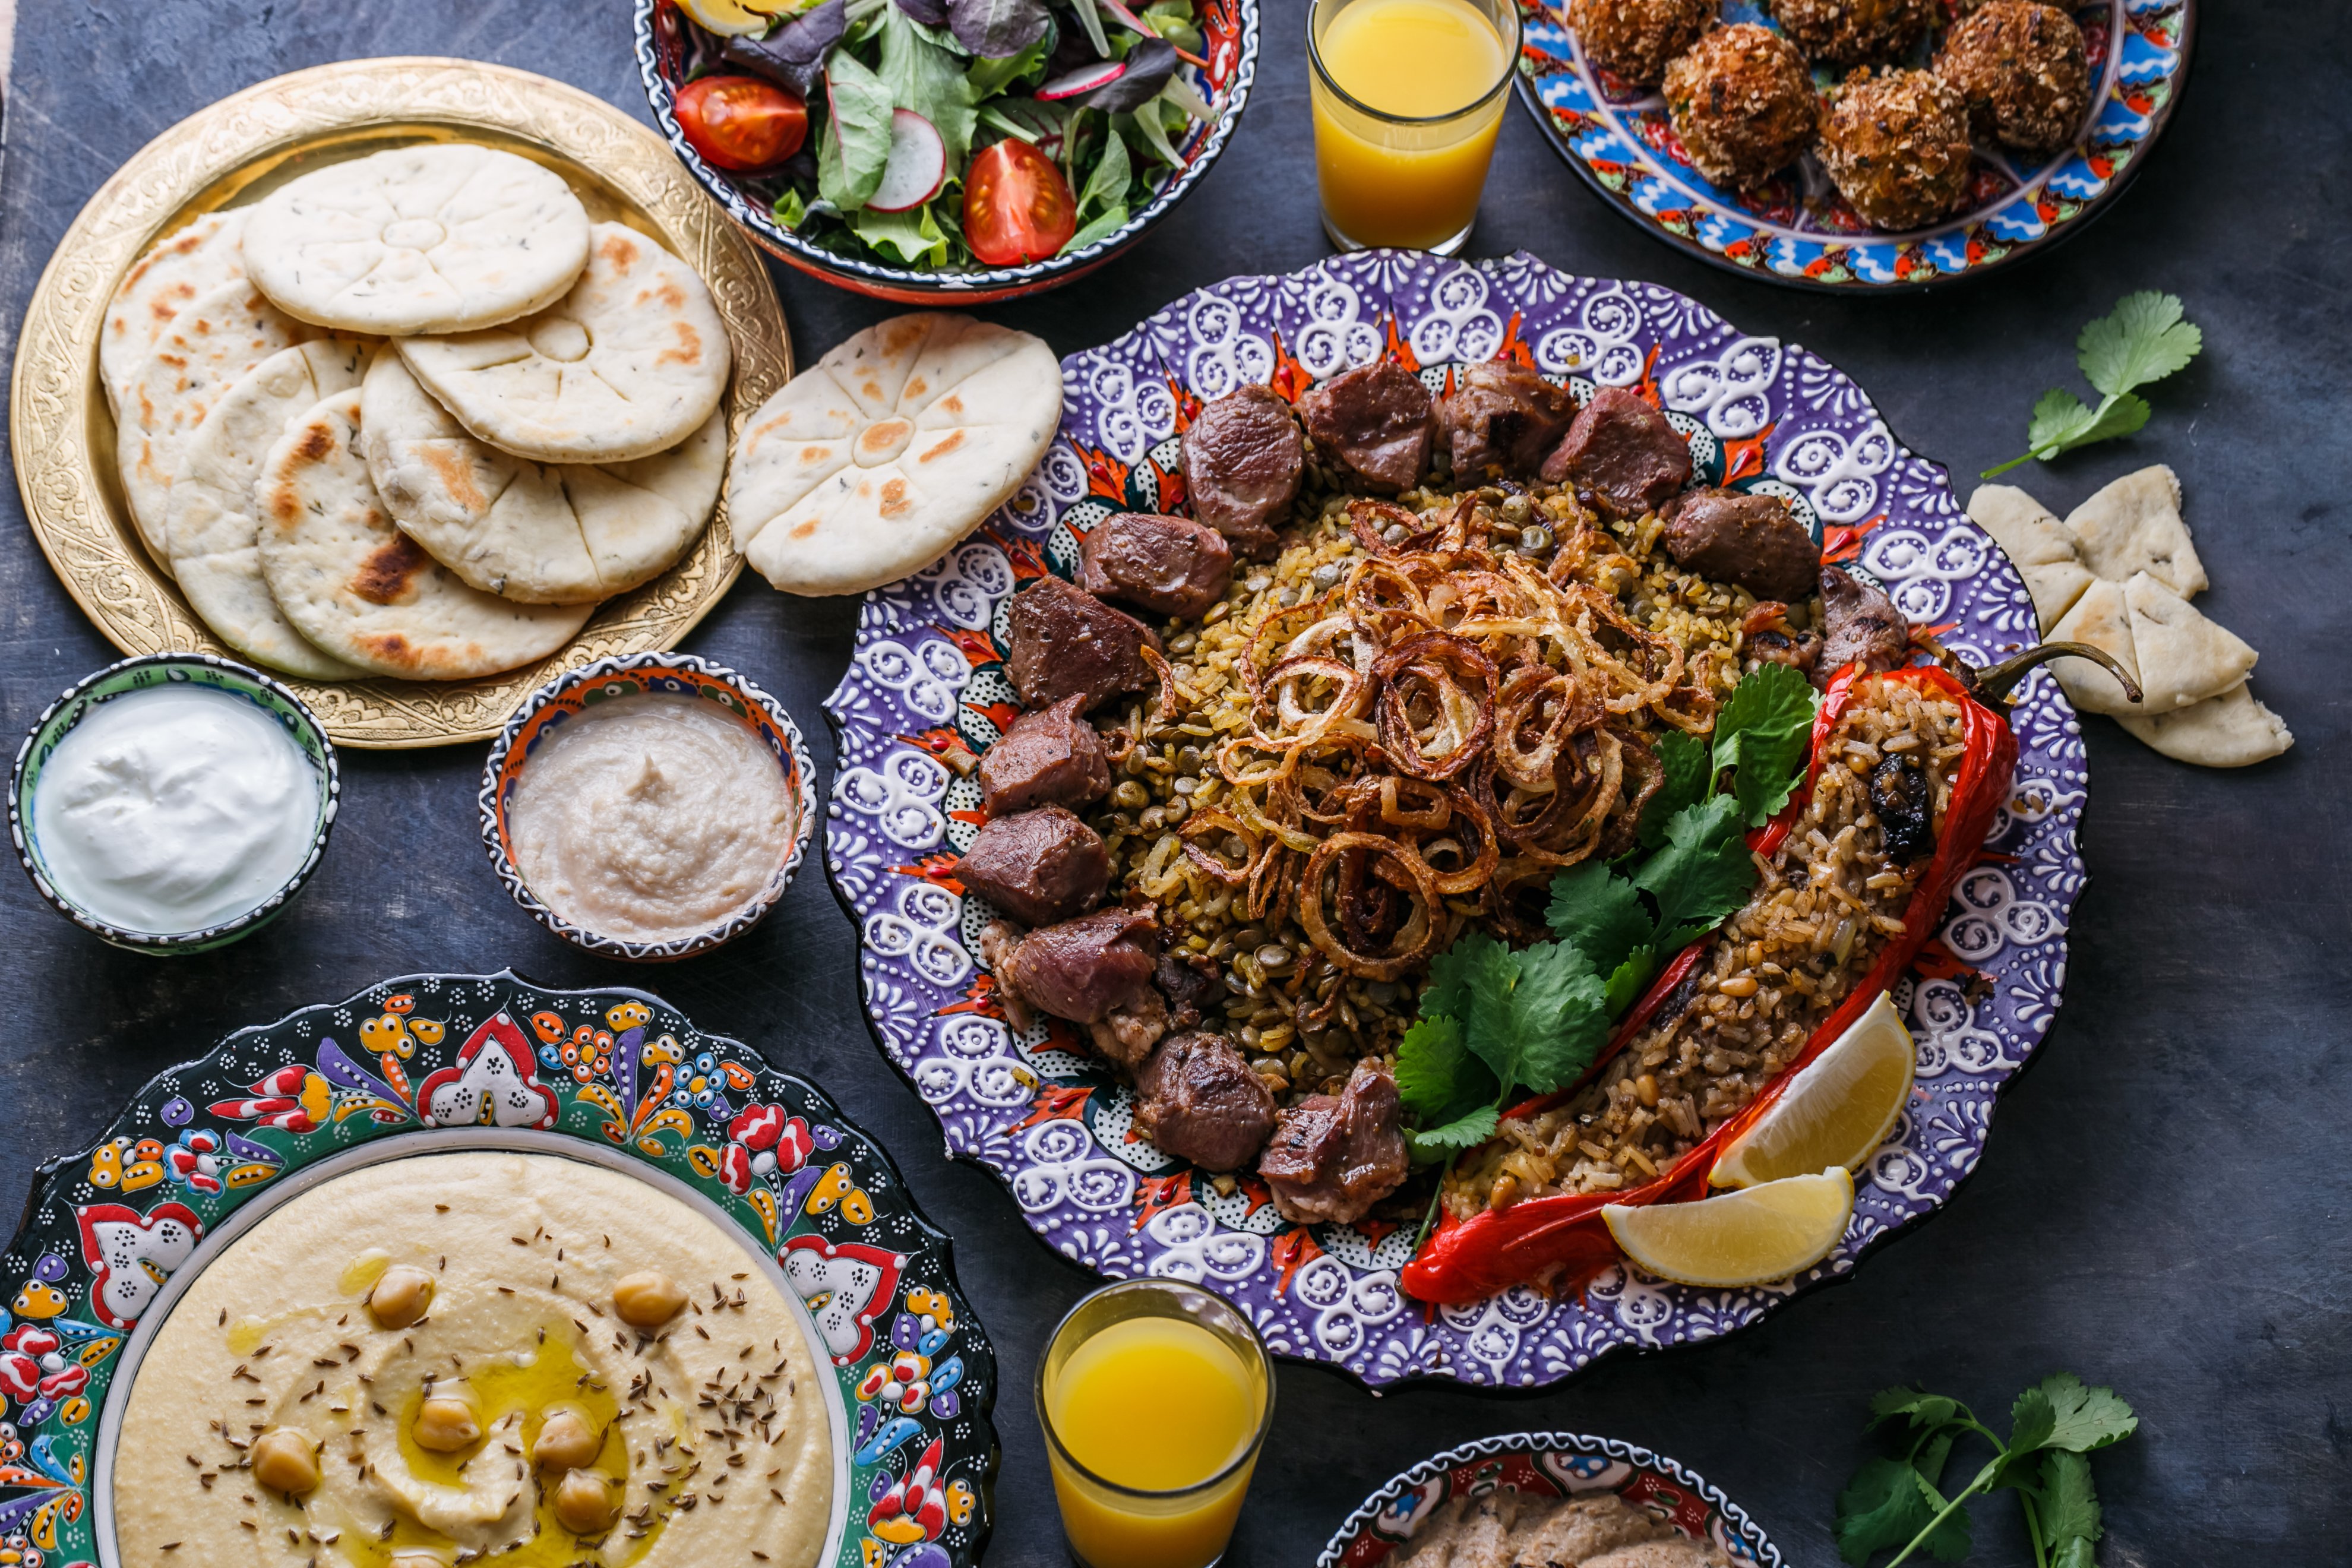 Cocina árabe: platos, ingredientes y receta